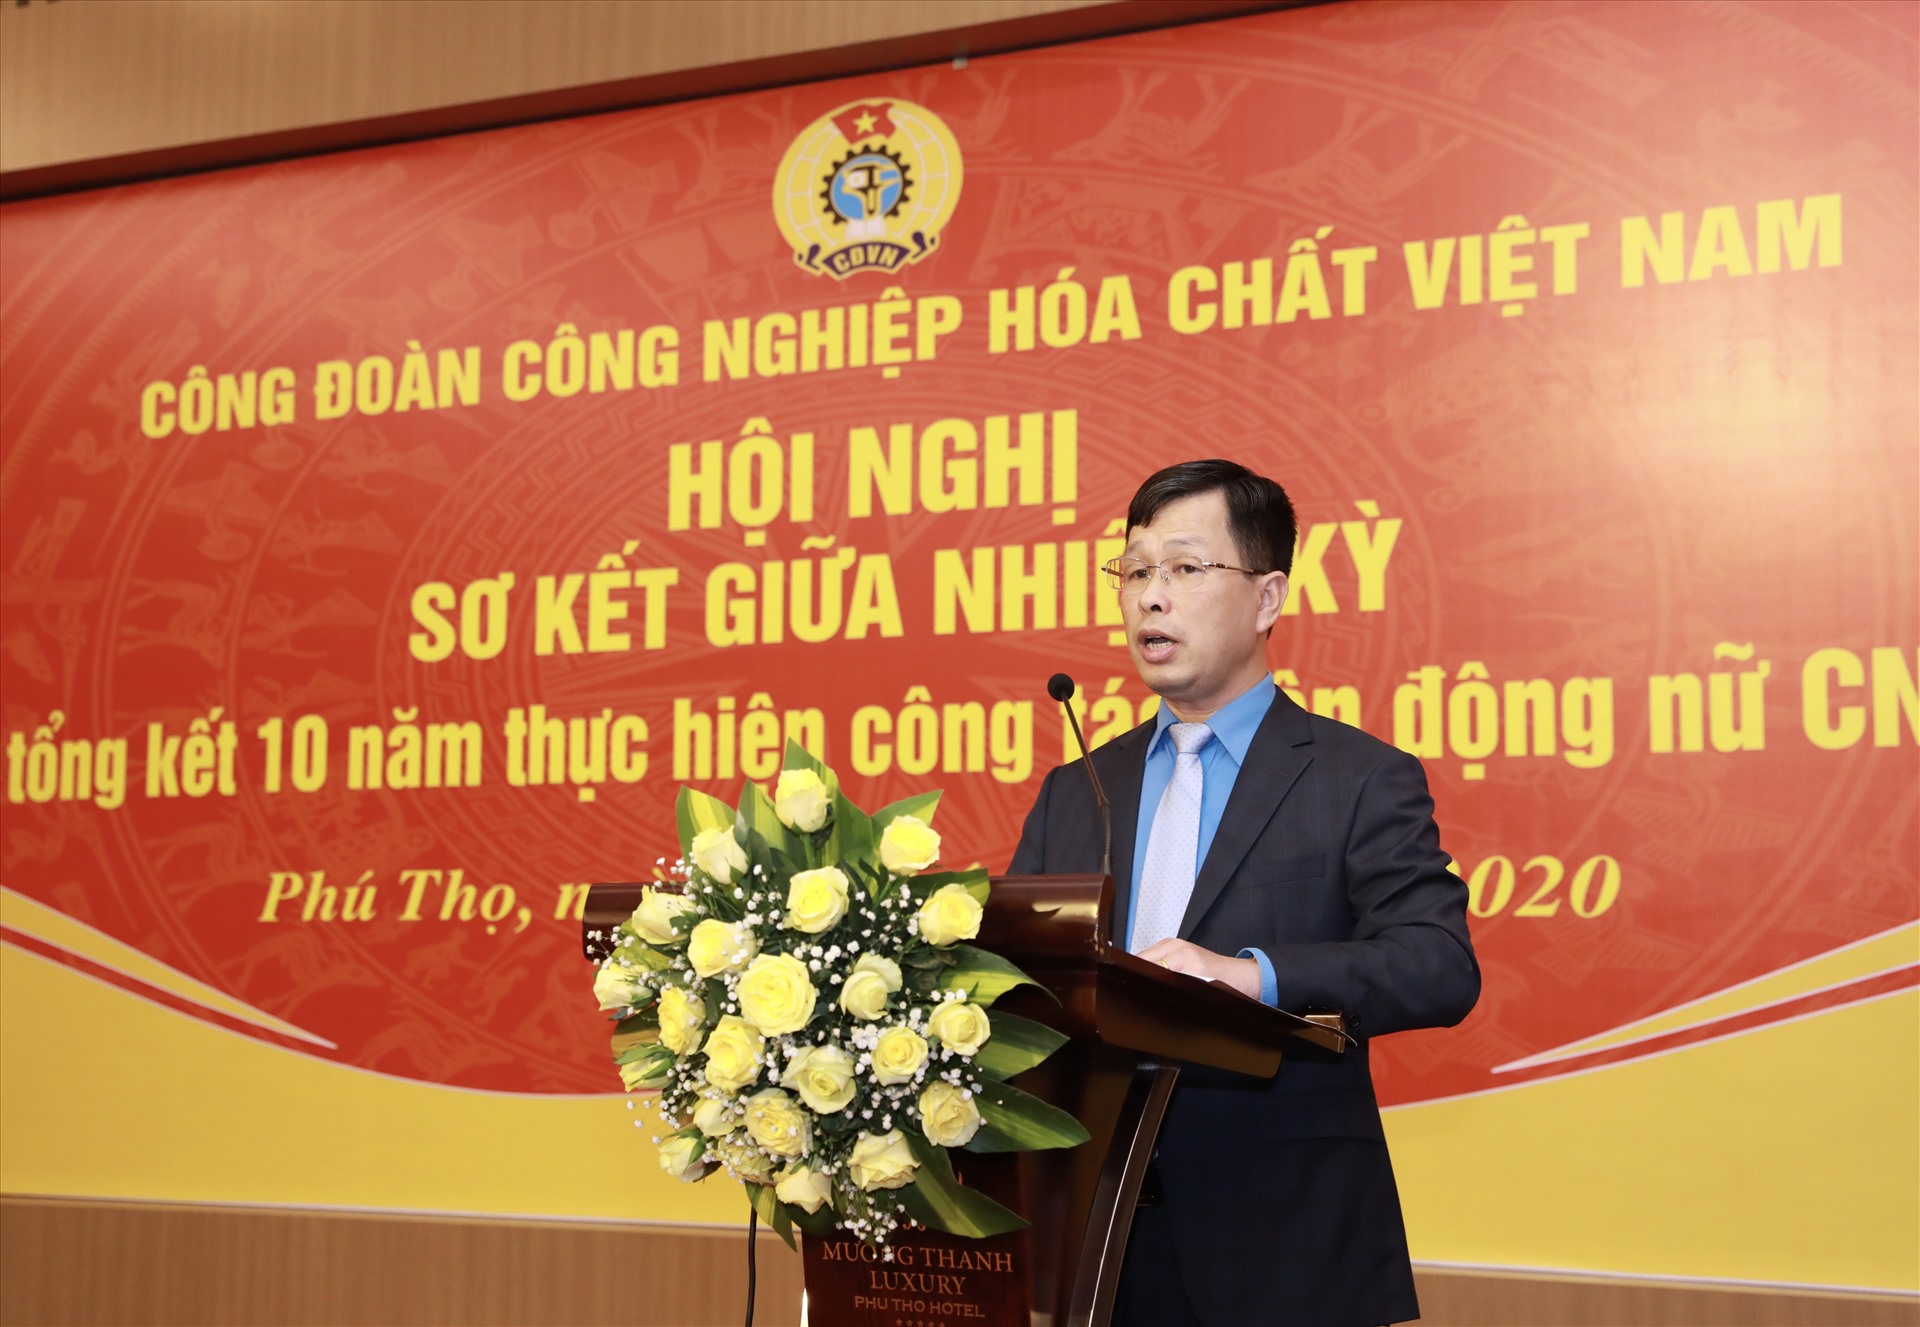 Đồng chí Nguyễn Huy Thông - Phó Chủ tịch Công đoàn Công nghiệp Hoá chất Việt Nam phát biểu tại Hội nghị. Ảnh: Hải Nguyễn